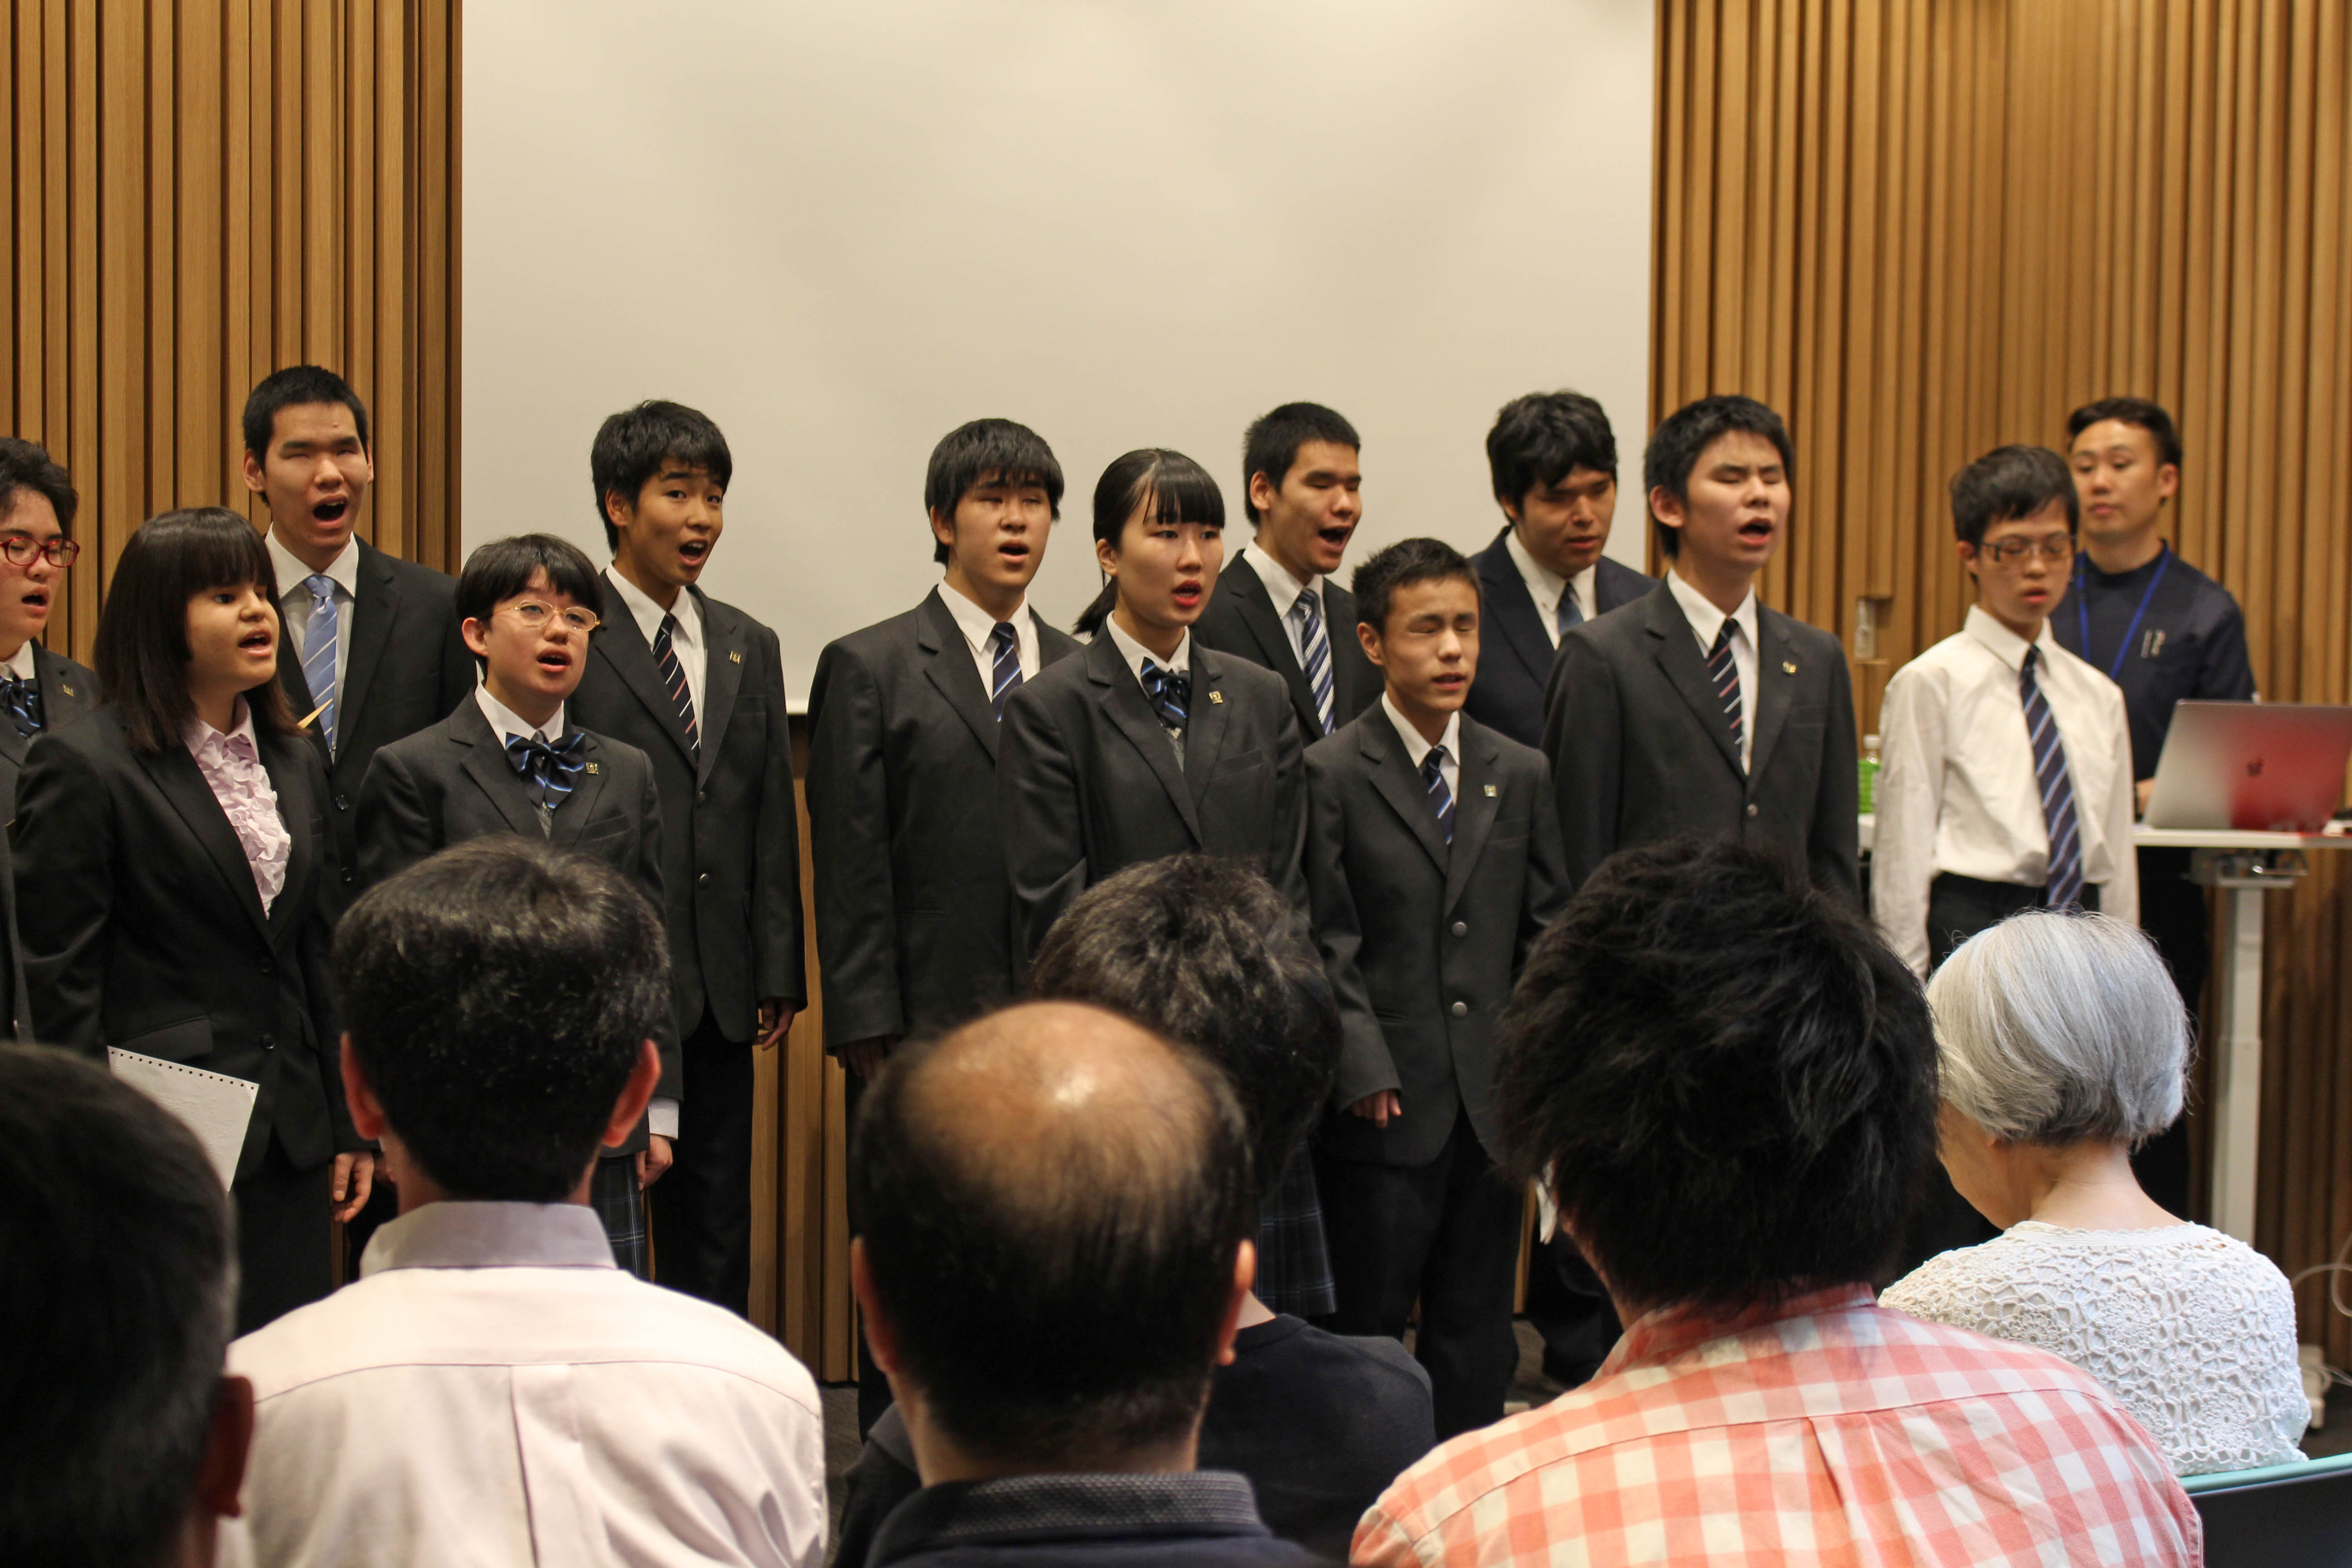 北海道札幌視覚支援学校音楽部の生徒さんによる音楽会の様子